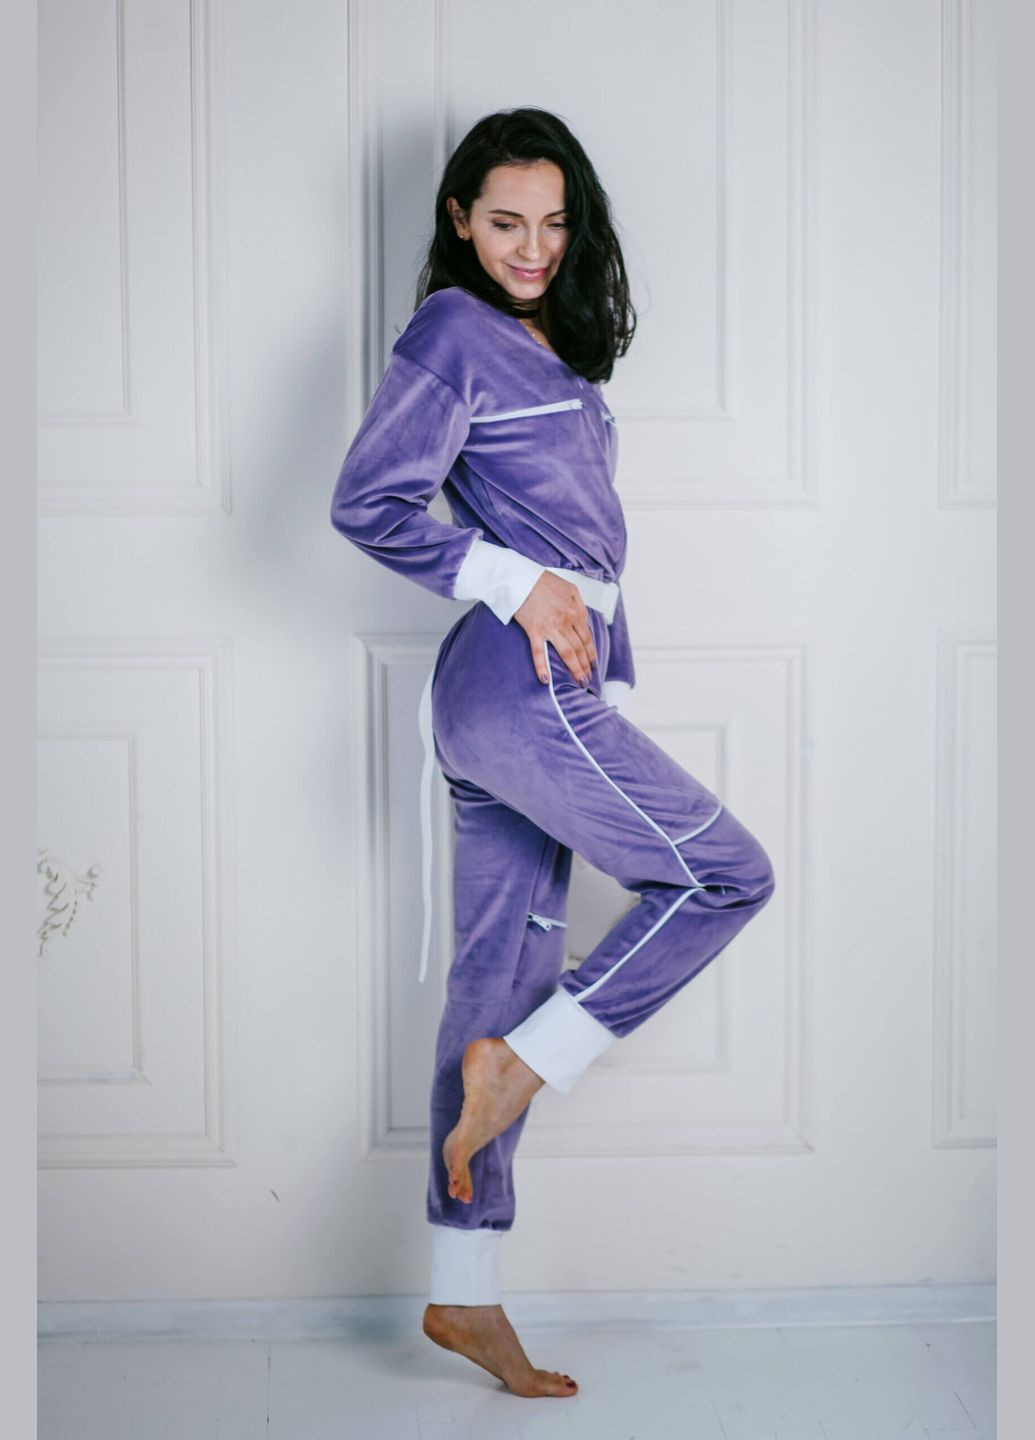 Комбинезон велюровый фиолетовый L JUGO fashion tayt комбинезон-брюки однотонный фиолетовый домашний